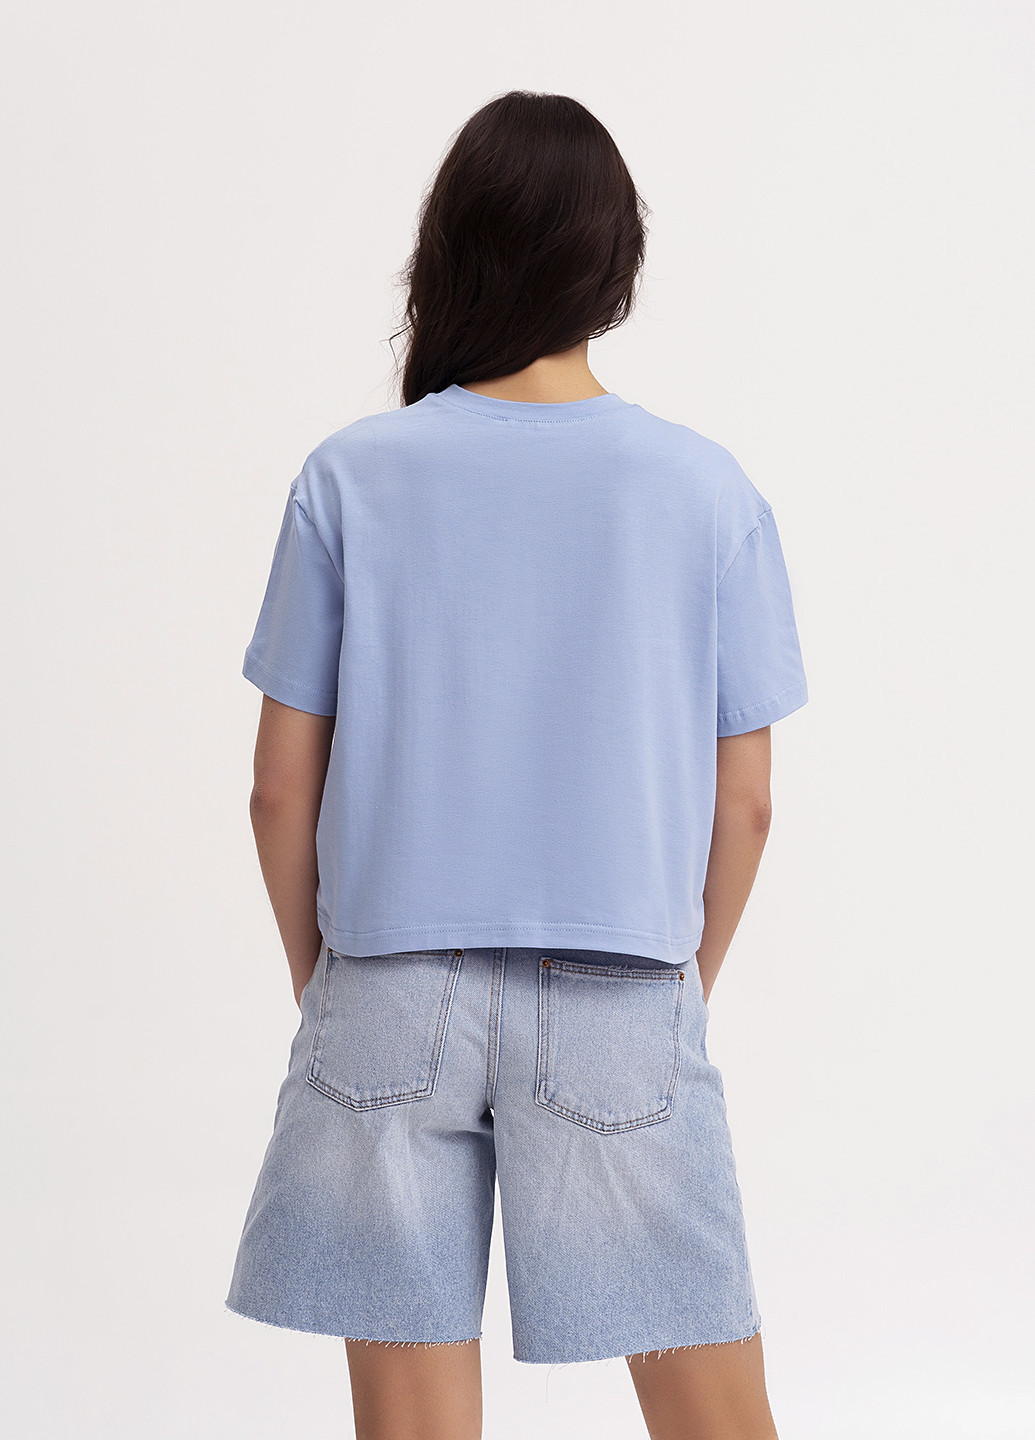 Голубая летняя футболка женская укороченная KASTA design